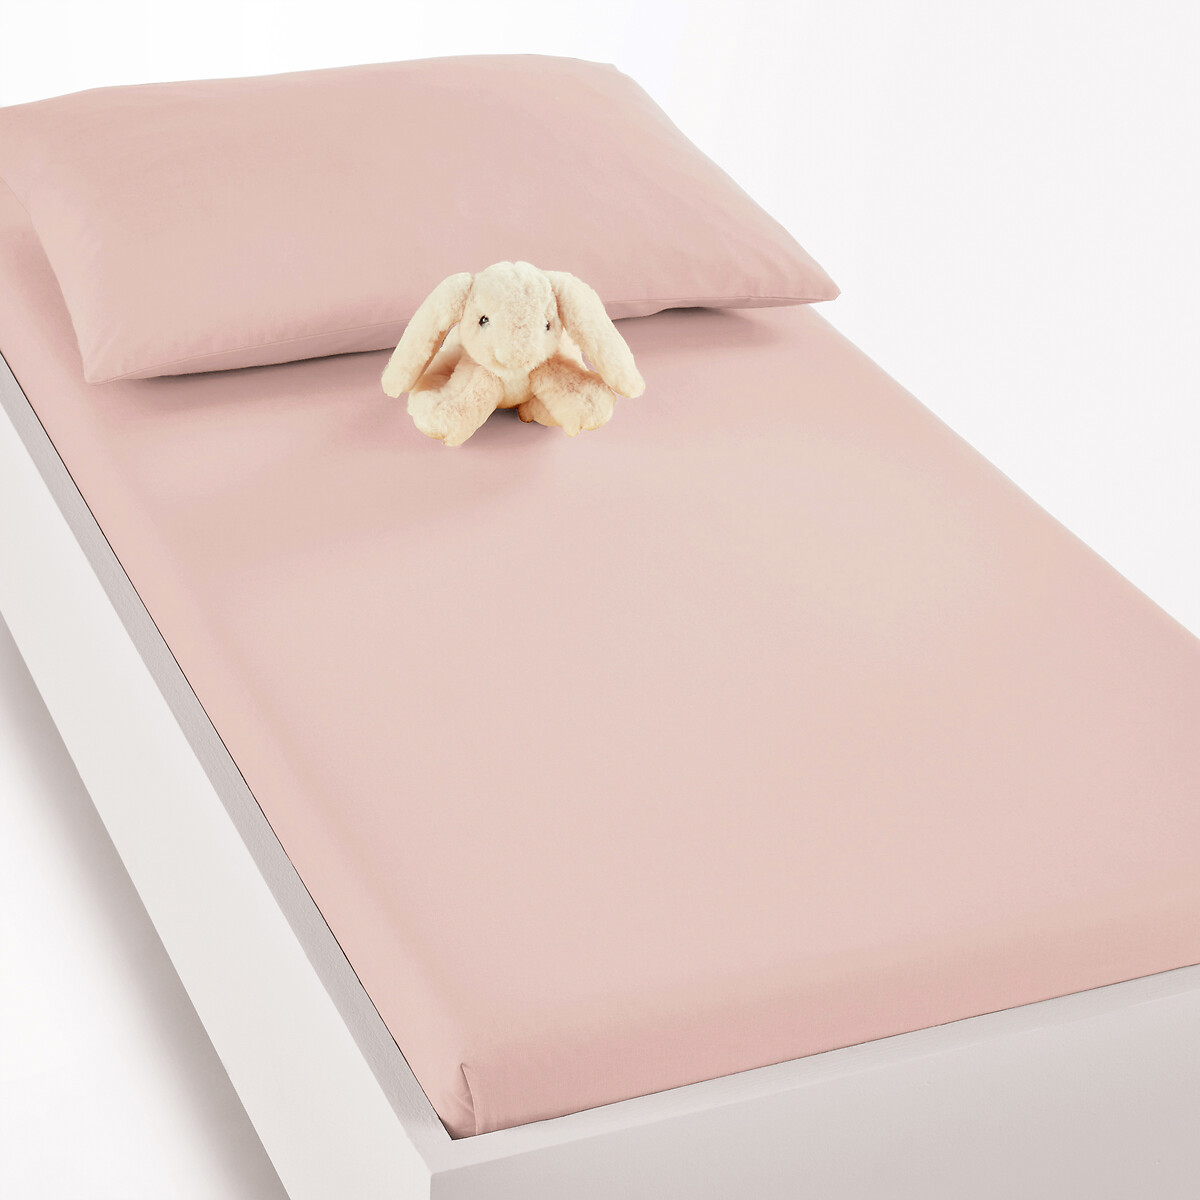 Простыня LaRedoute Натяжная для кровати грудного ребенка из биохлопка SCENARIO 70 x 140 см розовый, размер 70 x 140 см - фото 1